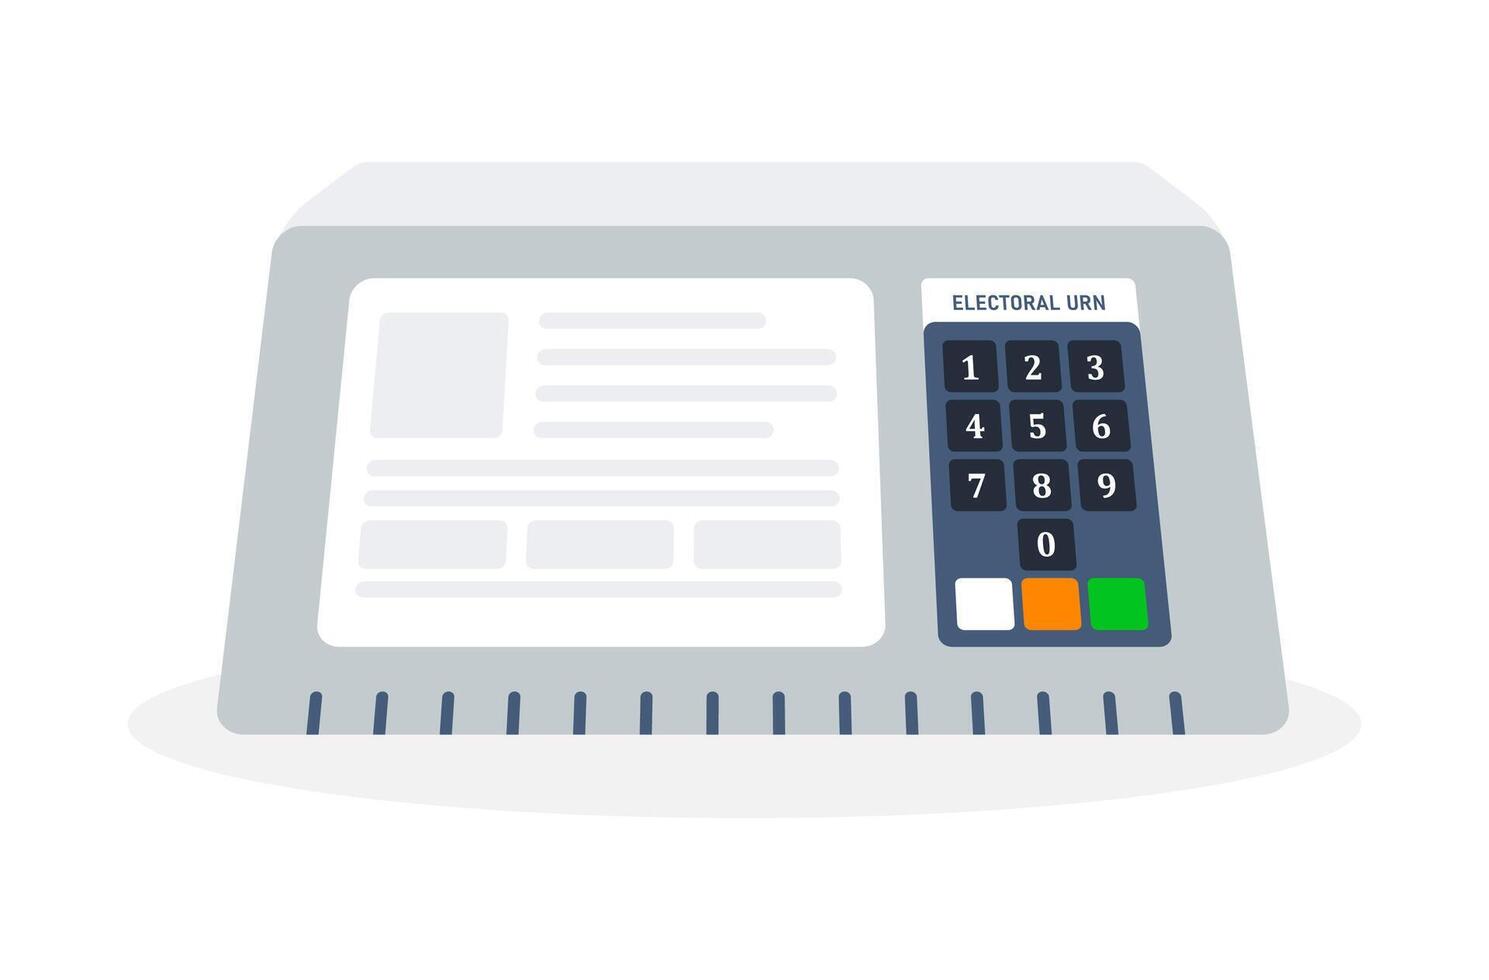 electrónico votación máquina con un monitor pantalla y numérico teclado, etiquetado electoral urna vector